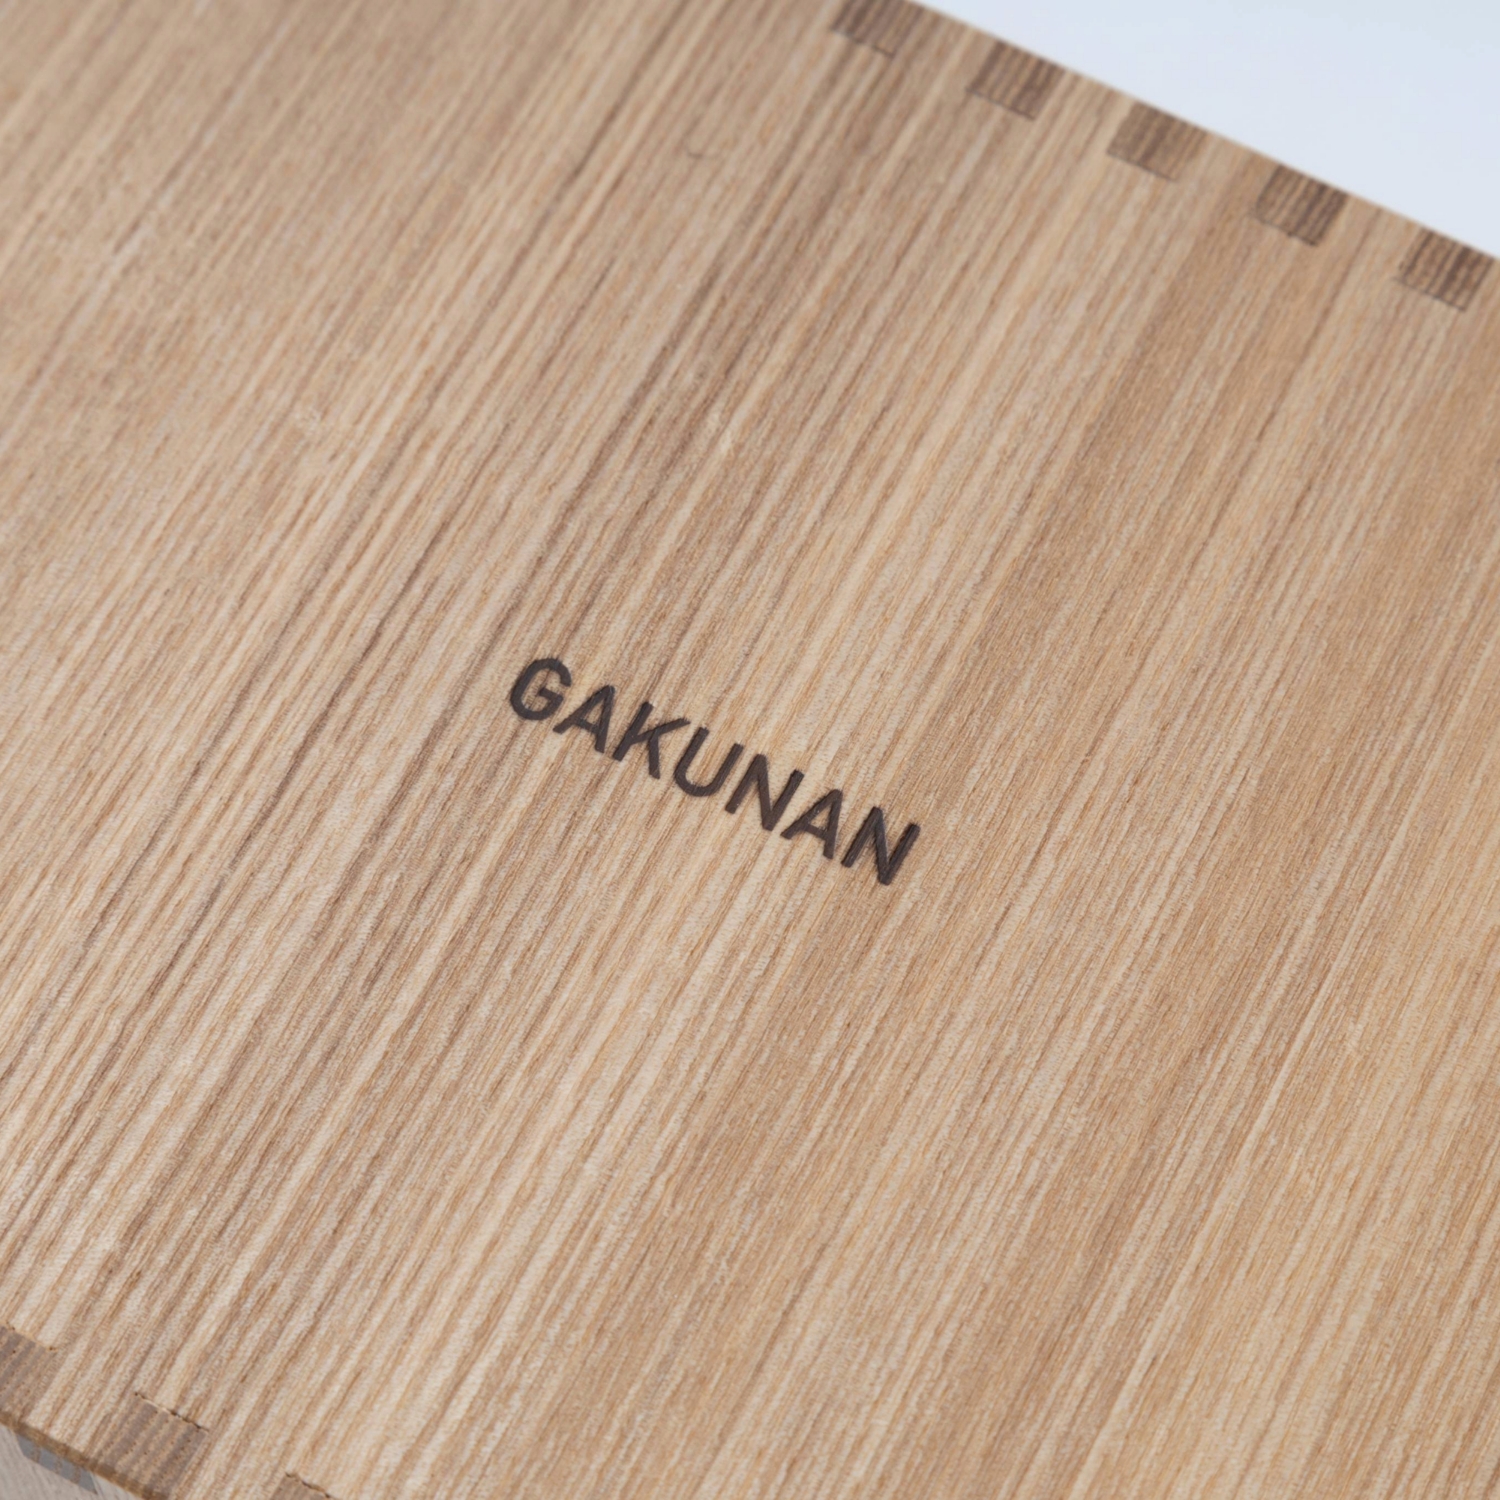 GAKUNAN/タモ材のティッシュケース アクリル